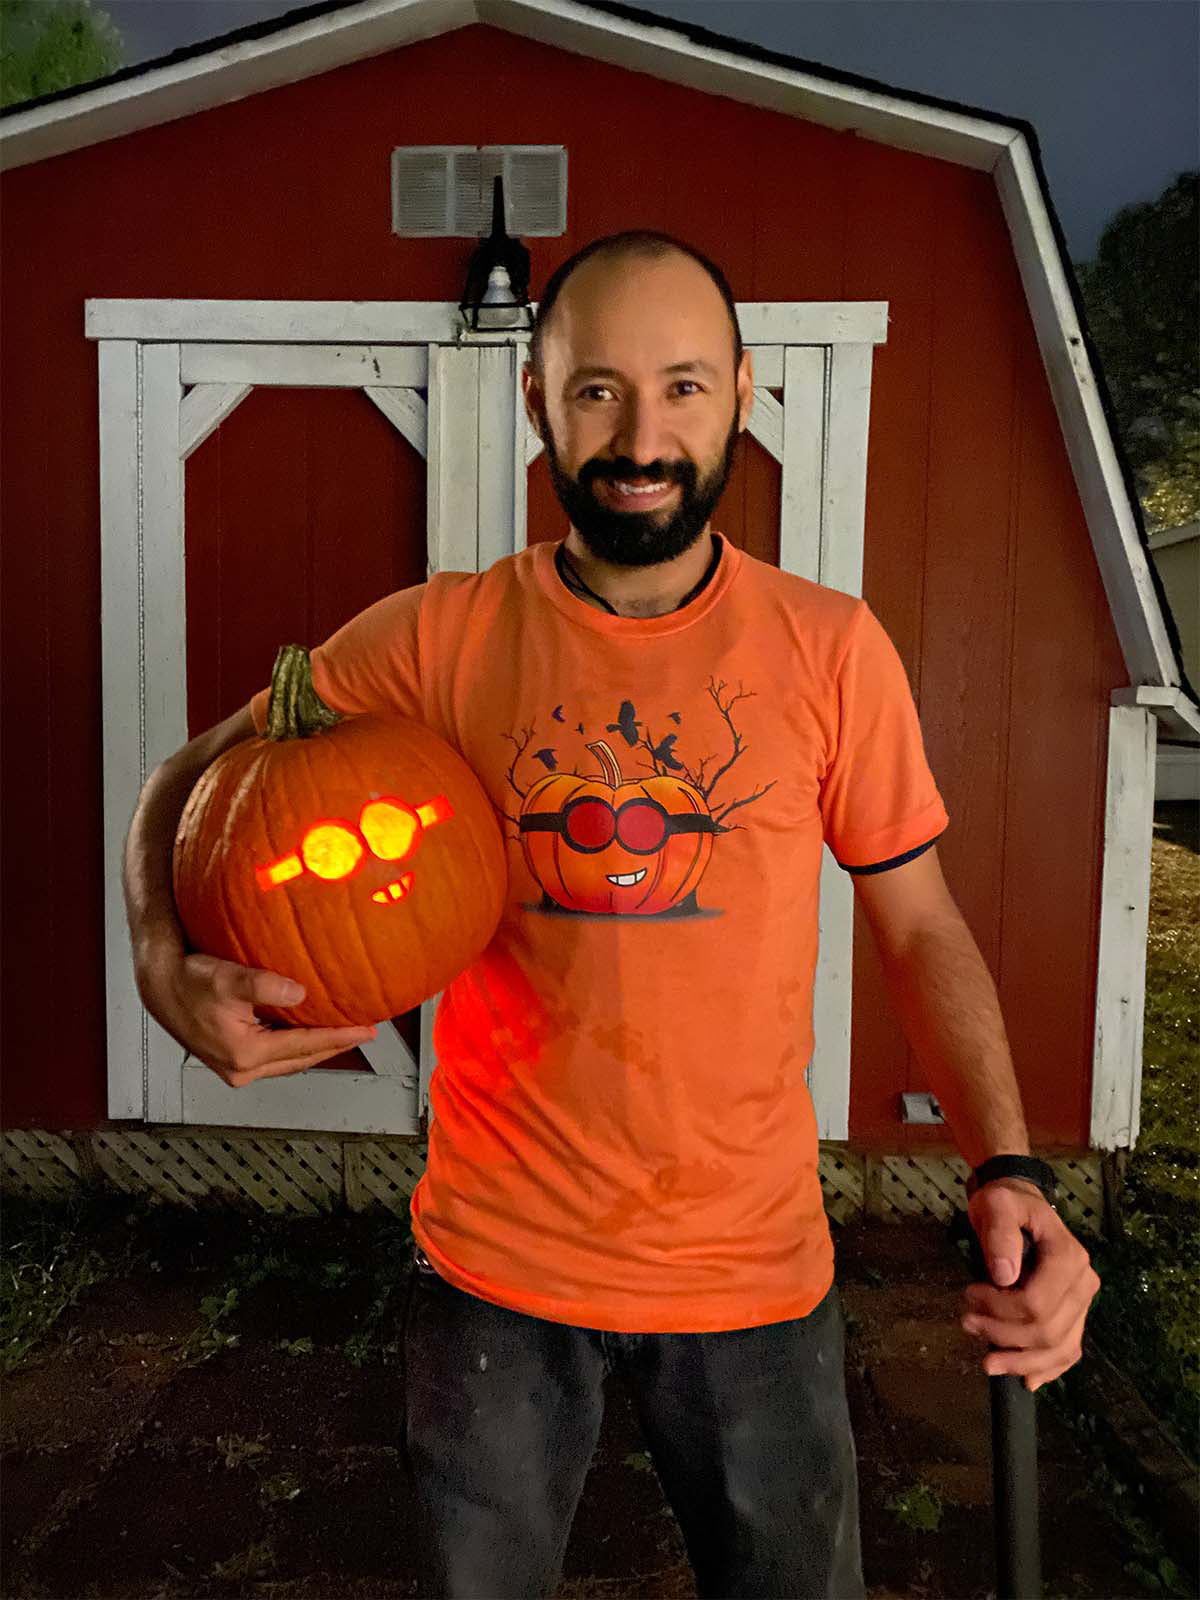 The Crazy Pumpkin T-shirt